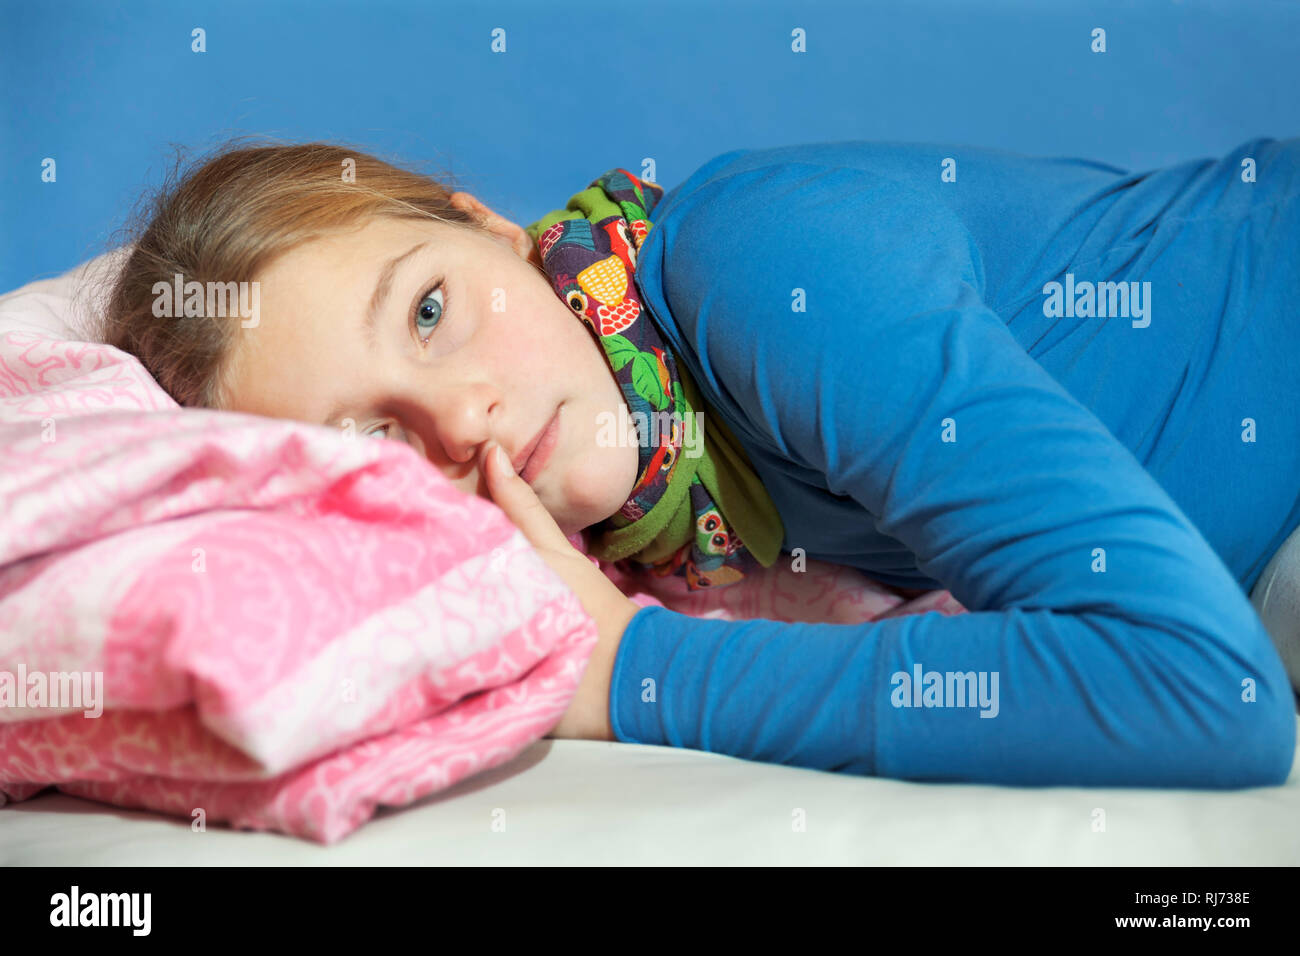 Mädchen, 10 Jahre alt, Ritratto, auf dem Bett liegend, traurig Foto Stock